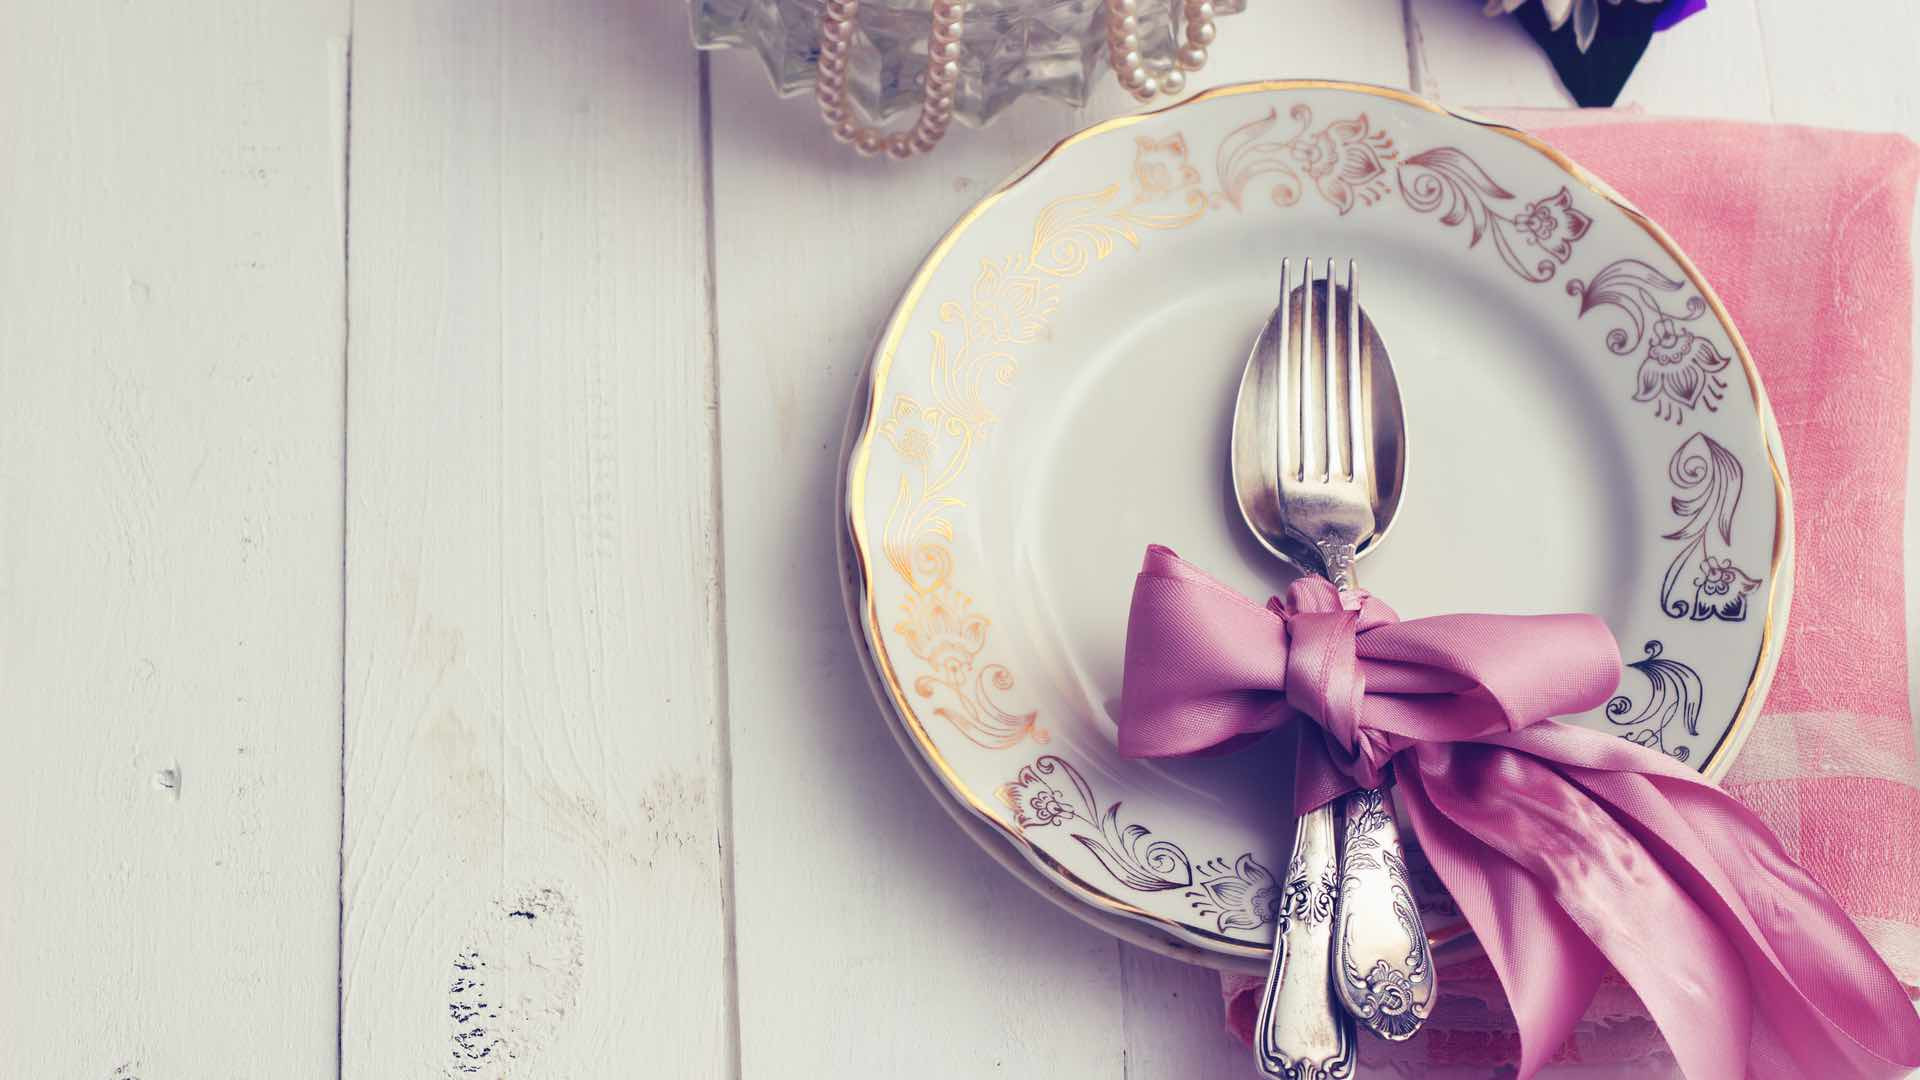 Kosten Hochzeit 50 Personen
 Kosten hochzeit catering 100 personen – Beliebtes